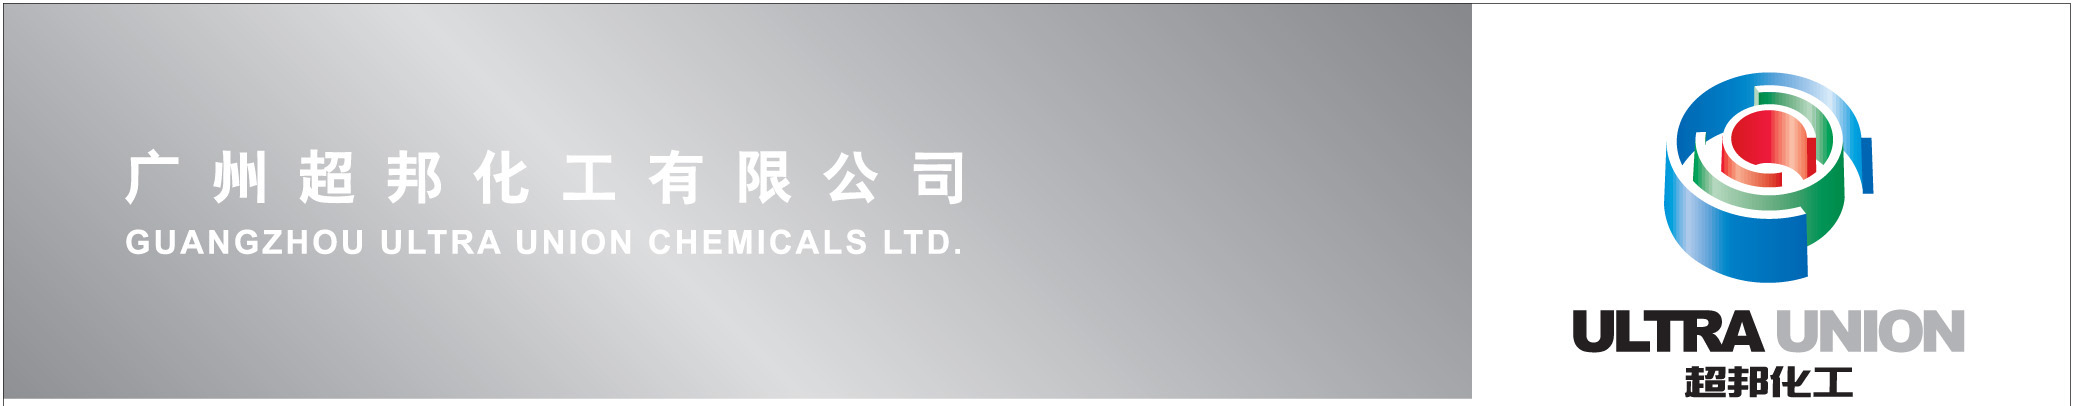 Guangzhou Ultra Union Chemicals Ltd.